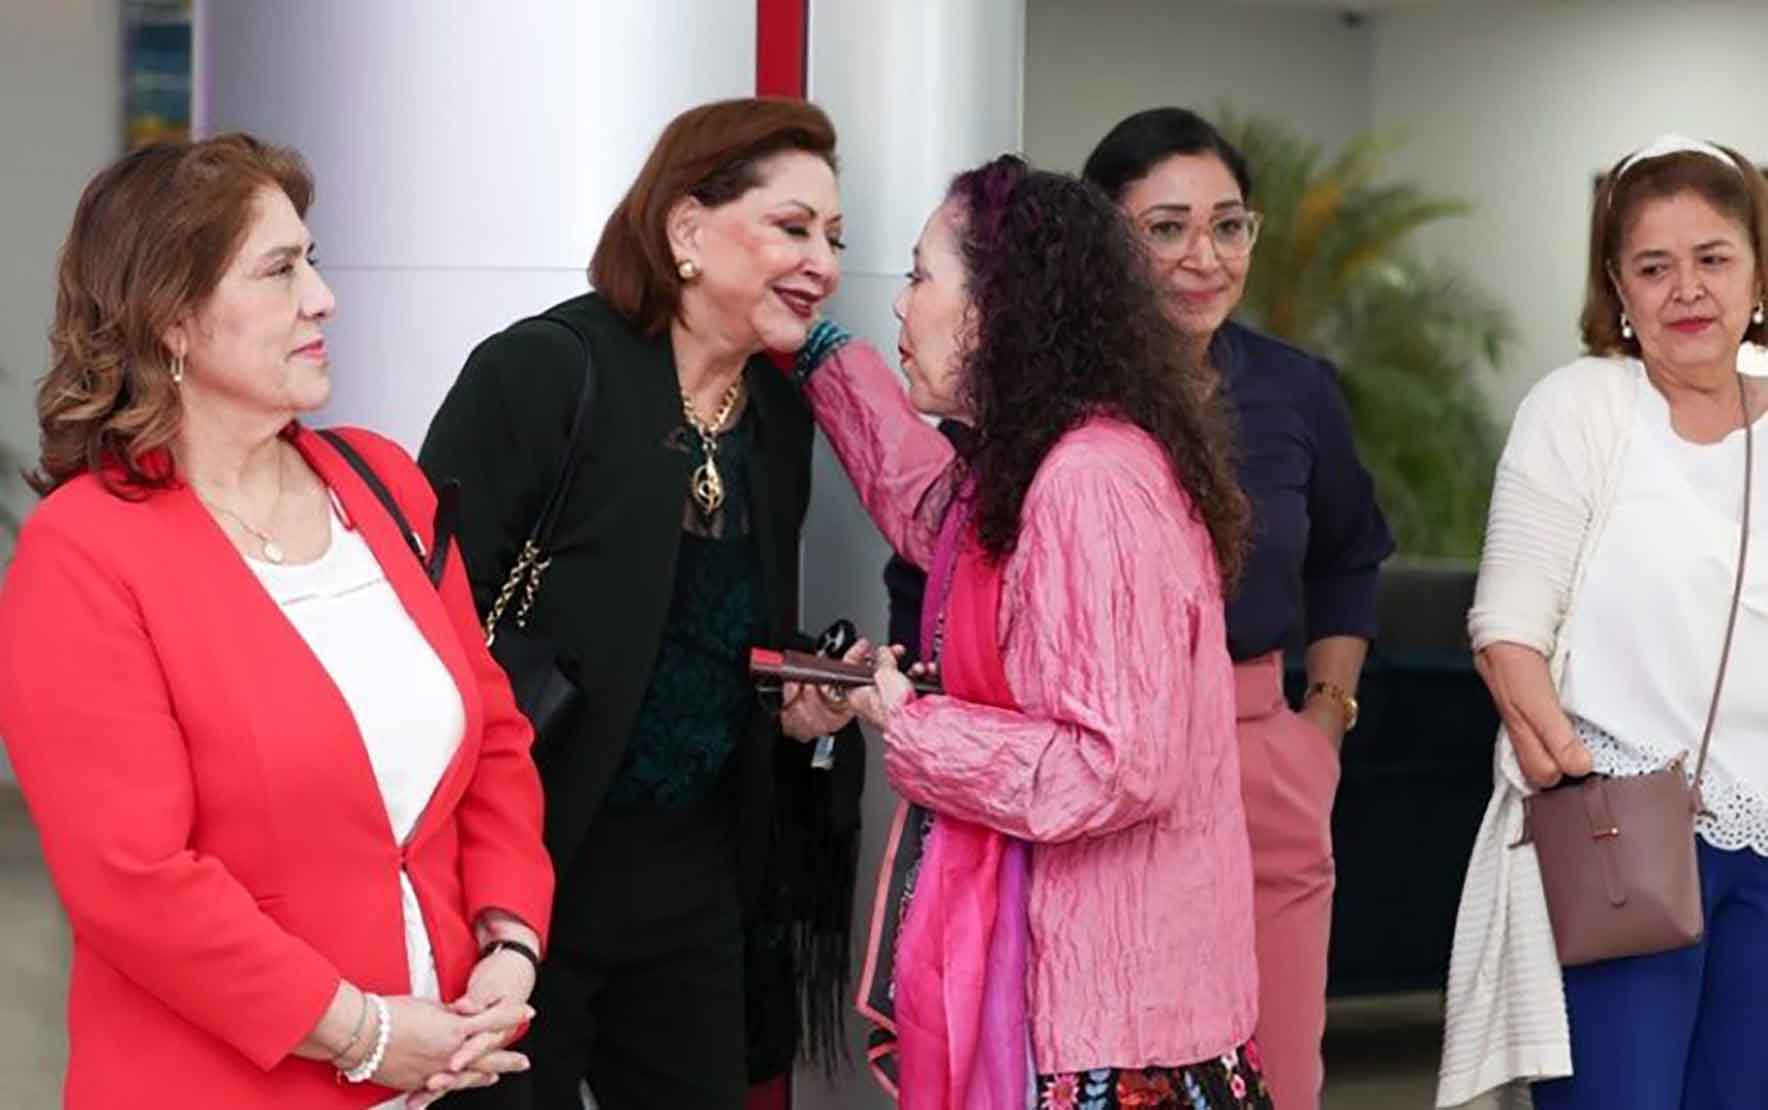 La magistrada Alba Luz Ramos (camisa negra) saluda a Rosario Murillo, con quien siempre mantuvo una relación tensa. Foto tomada de Presidencia | El 19 Digital.